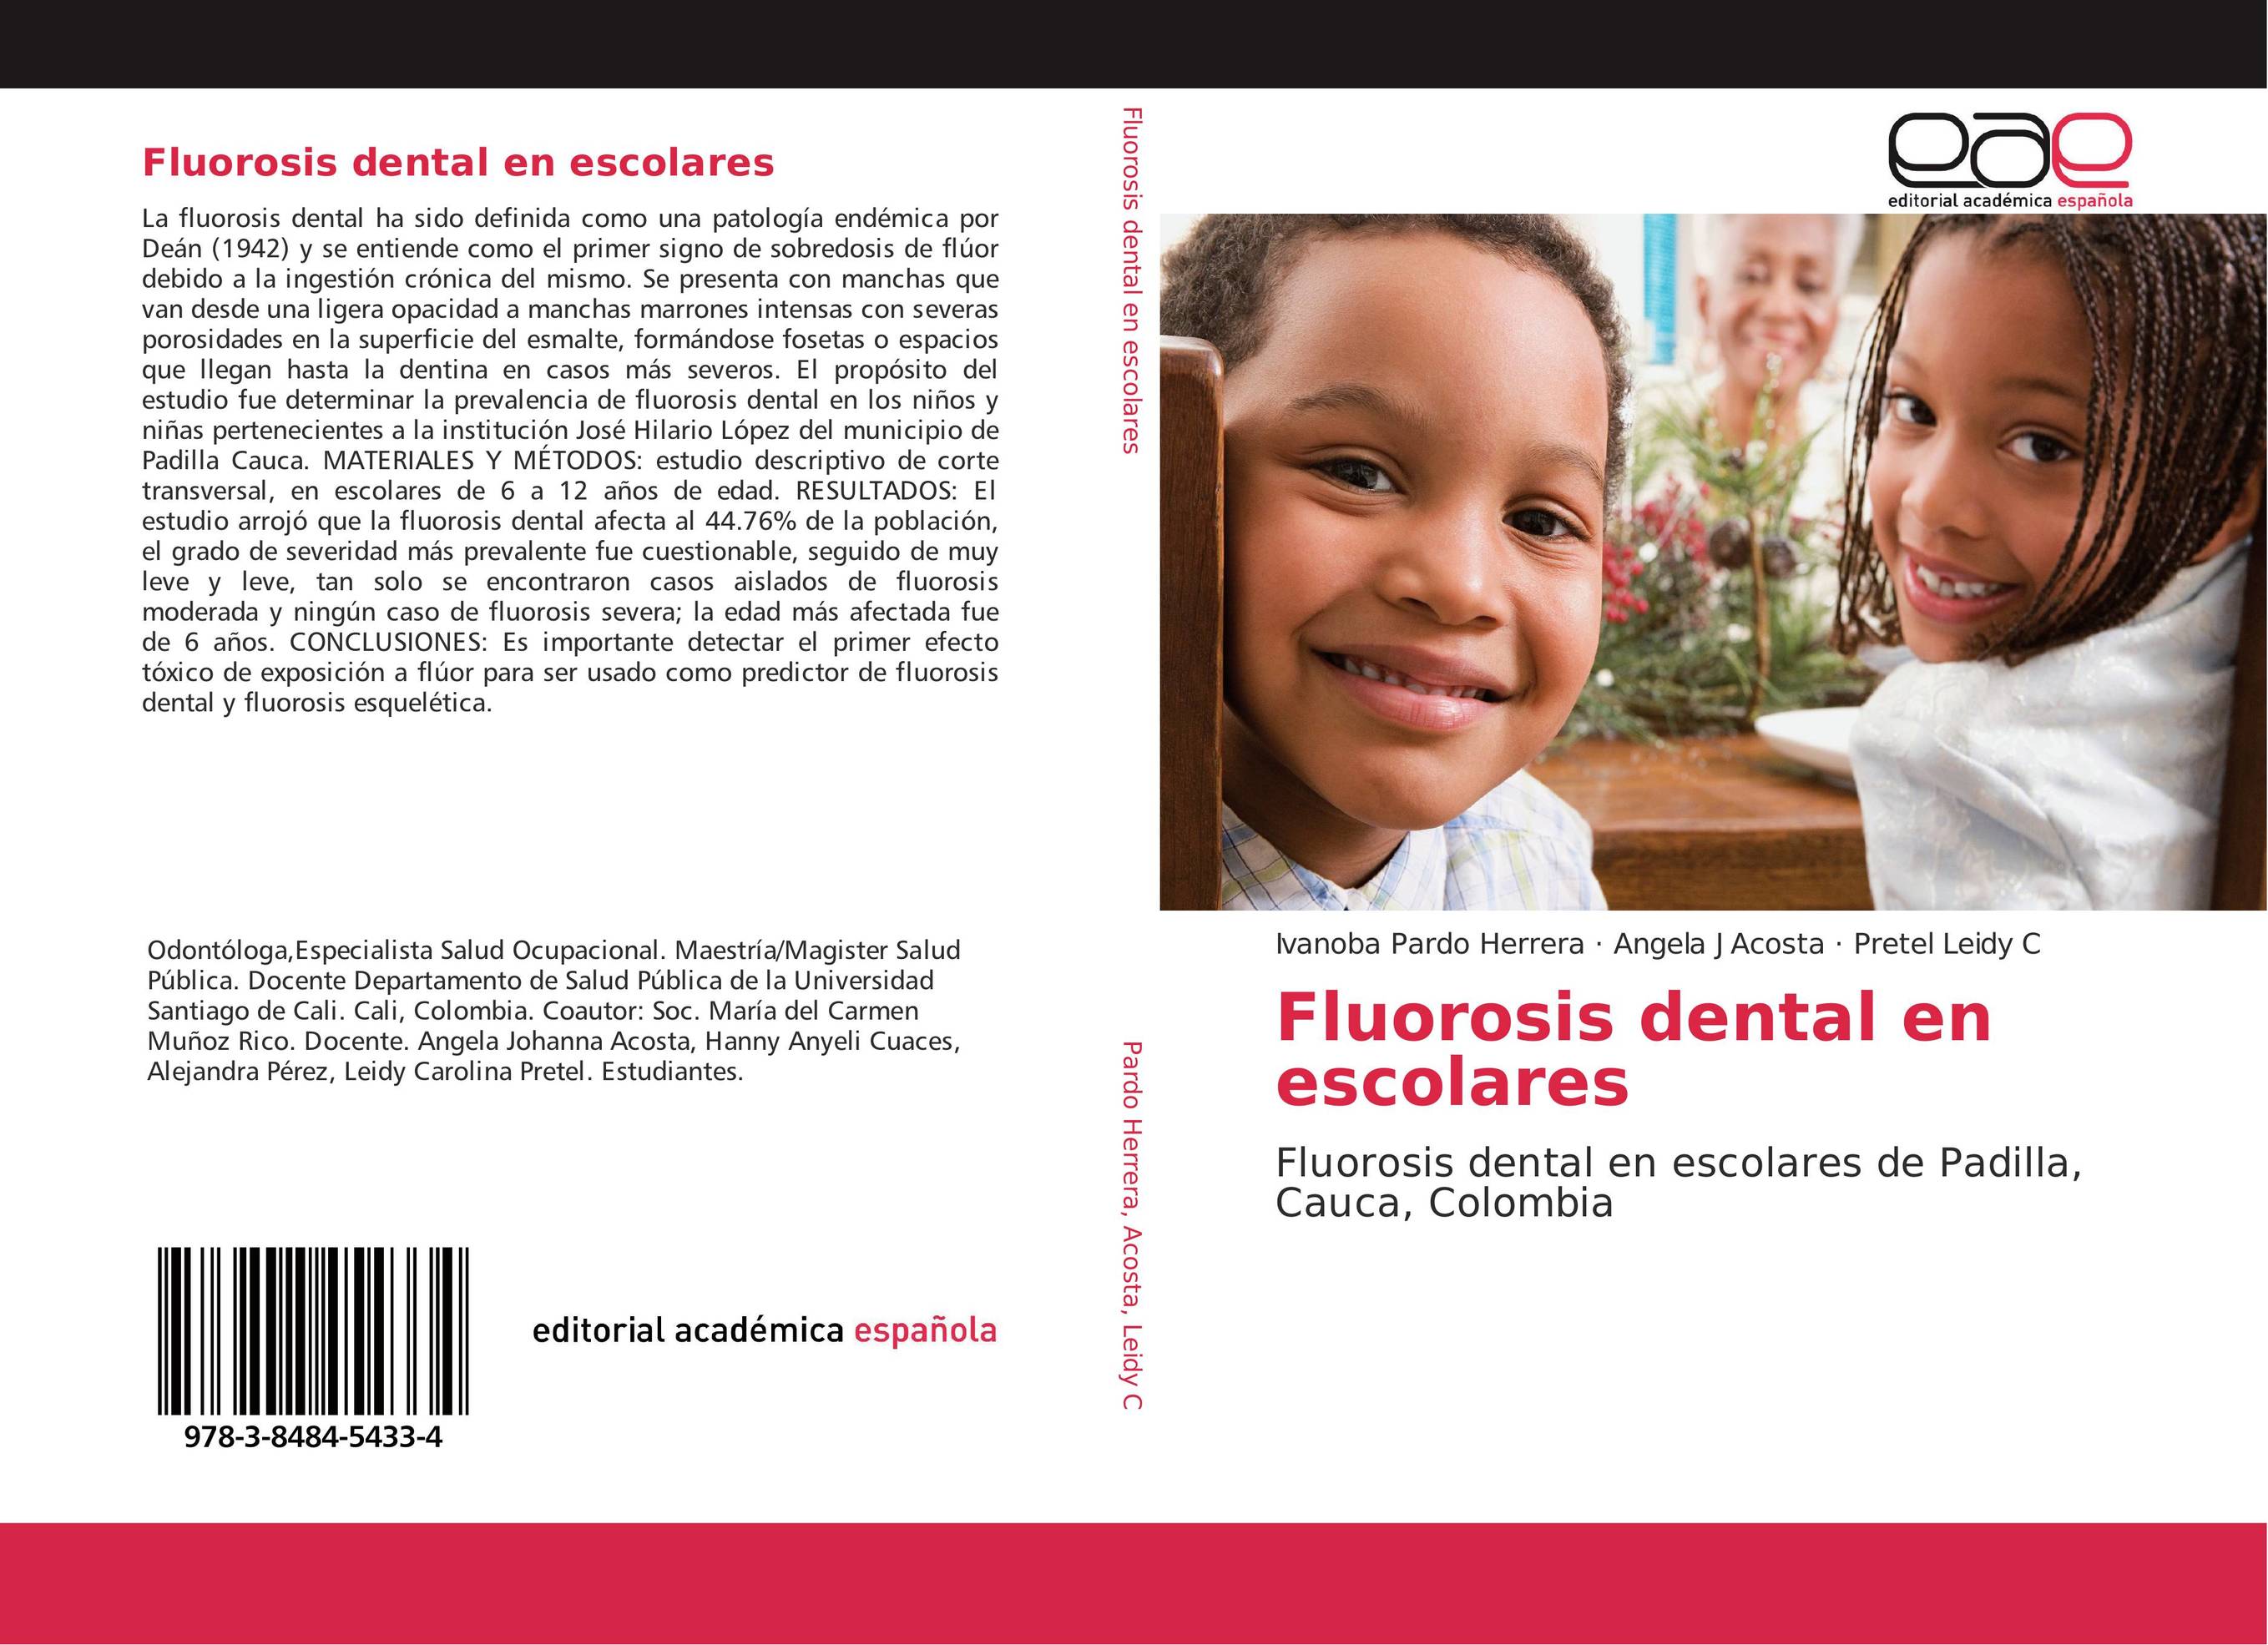 Fluorosis dental en escolares